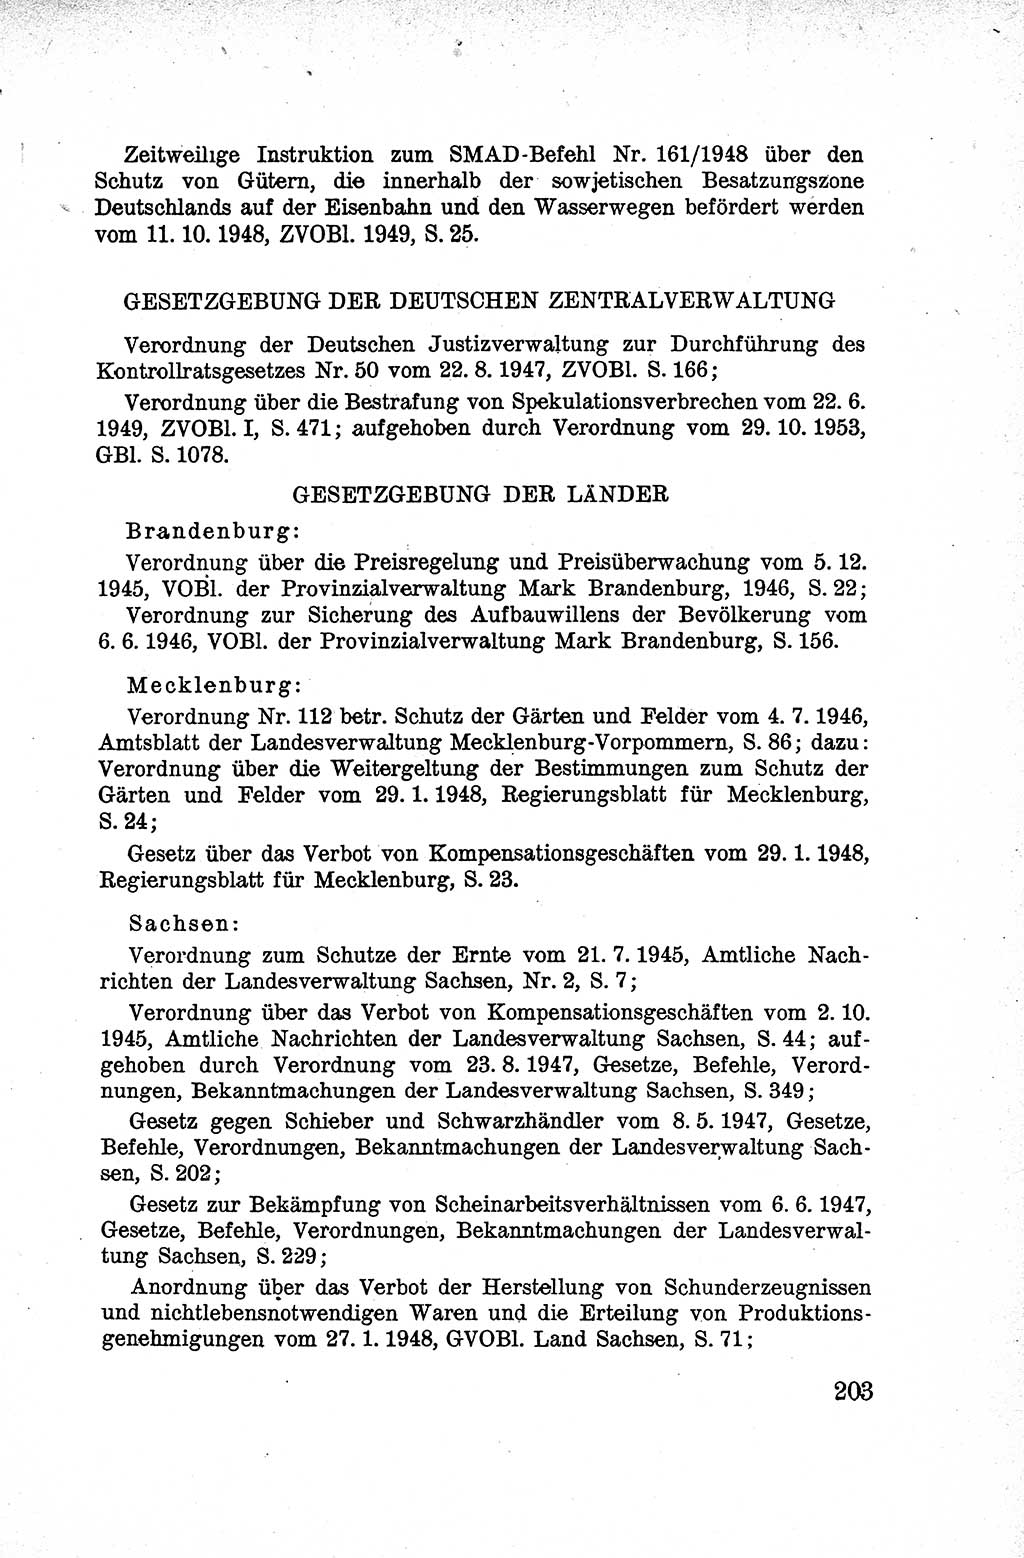 Lehrbuch des Strafrechts der Deutschen Demokratischen Republik (DDR), Allgemeiner Teil 1959, Seite 203 (Lb. Strafr. DDR AT 1959, S. 203)